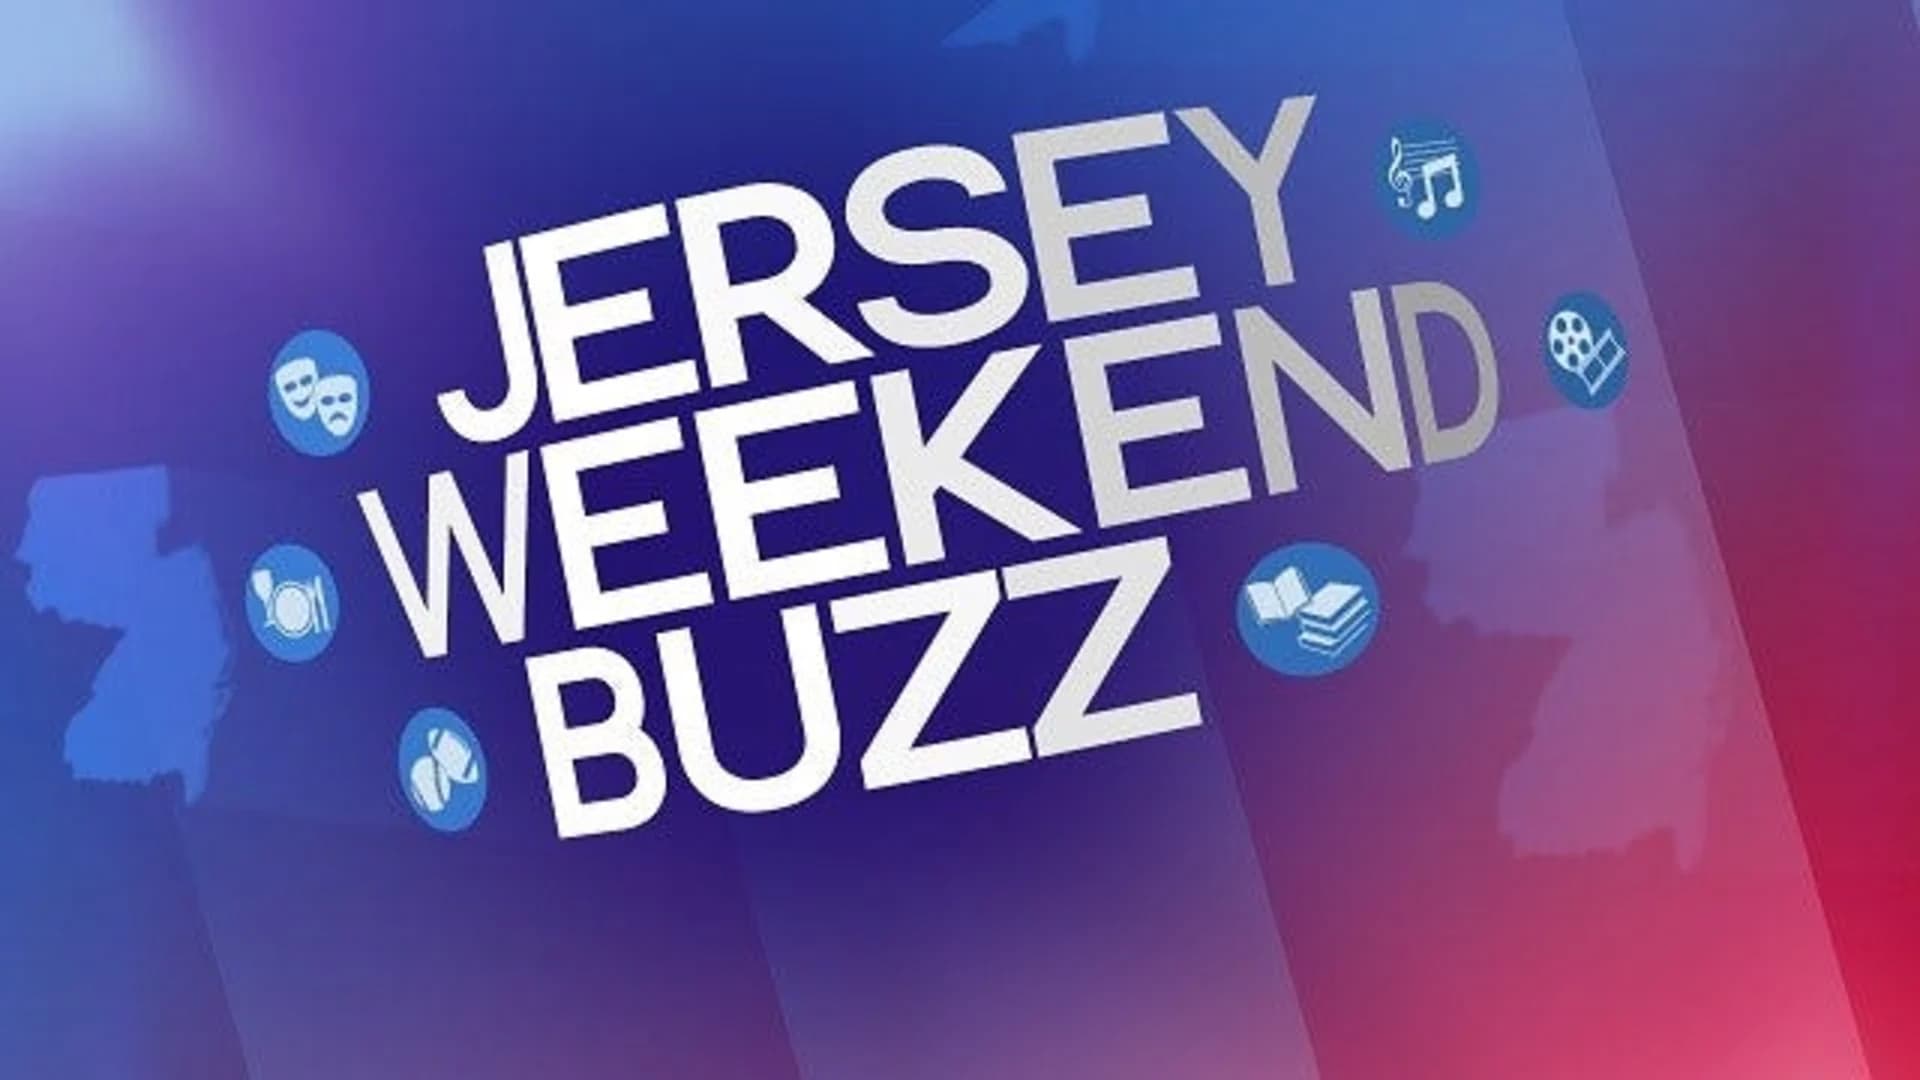 Jersey Weekend Buzz: Jan. 12-14, 2018